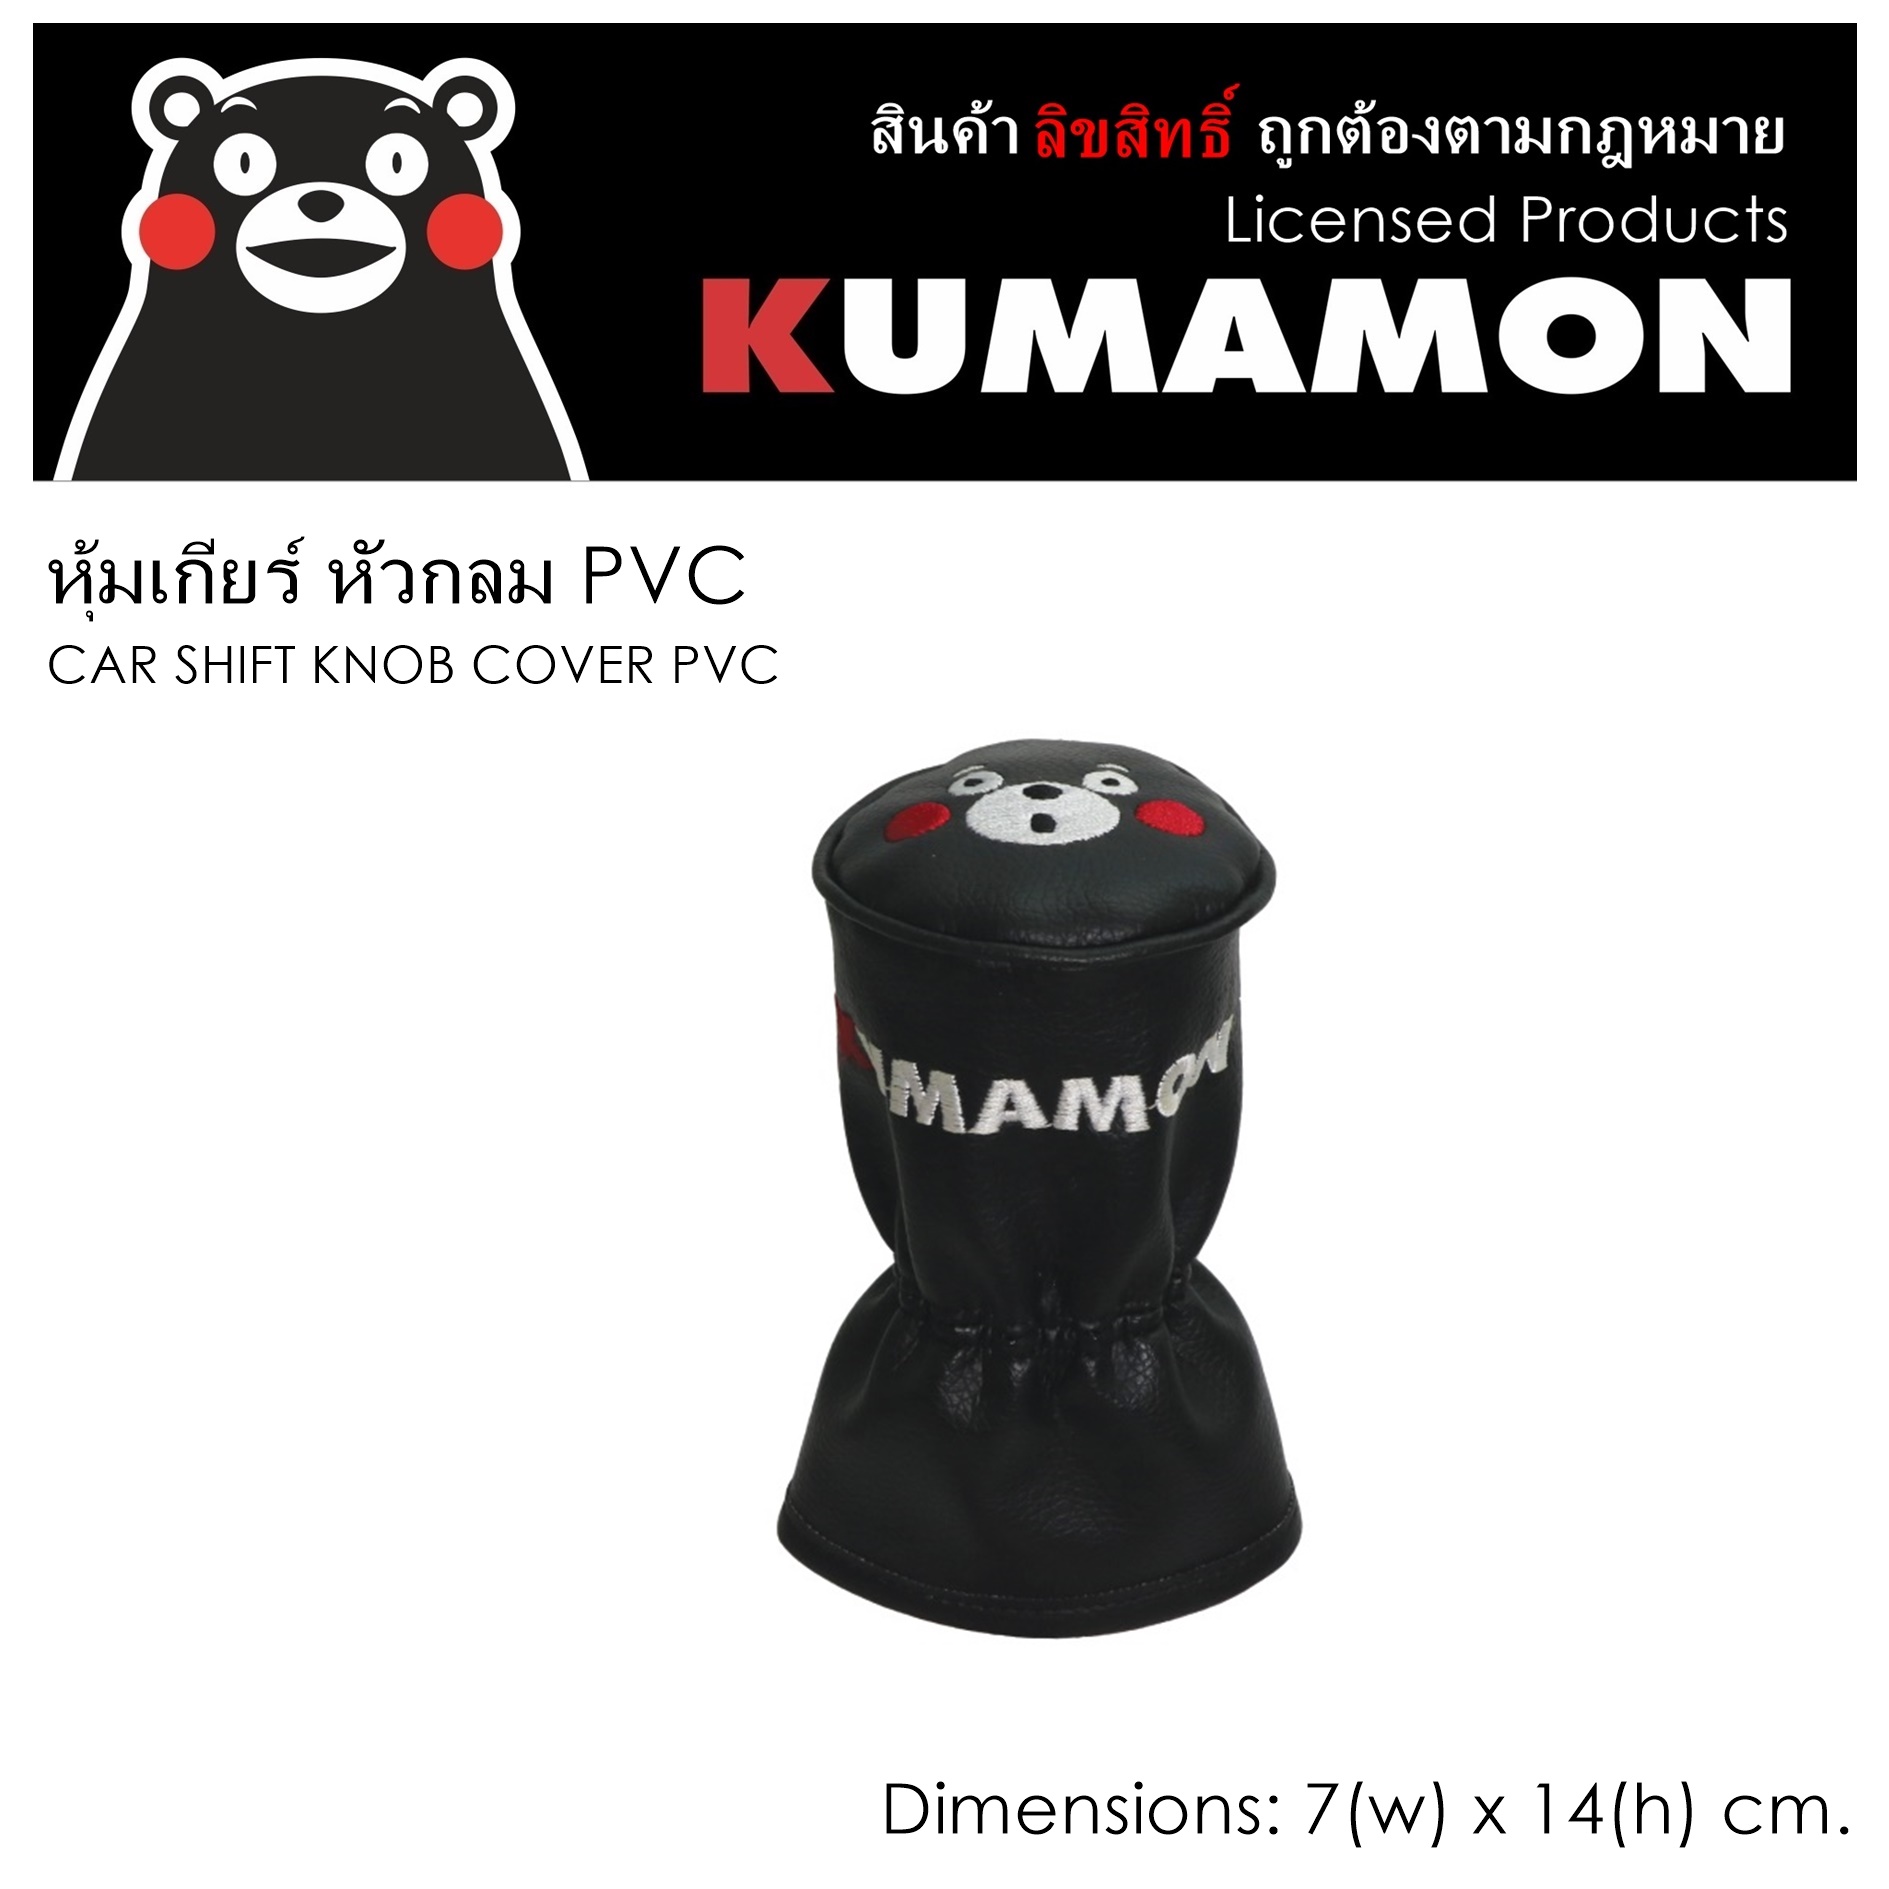 PVC KUMAMON คุมะมง หุ้มเกียร์ 1 ชิ้น งานหนัง PVC ลิขสิทธิ์แท้ ขนาด 7x14 cm. งานคุณภาพ